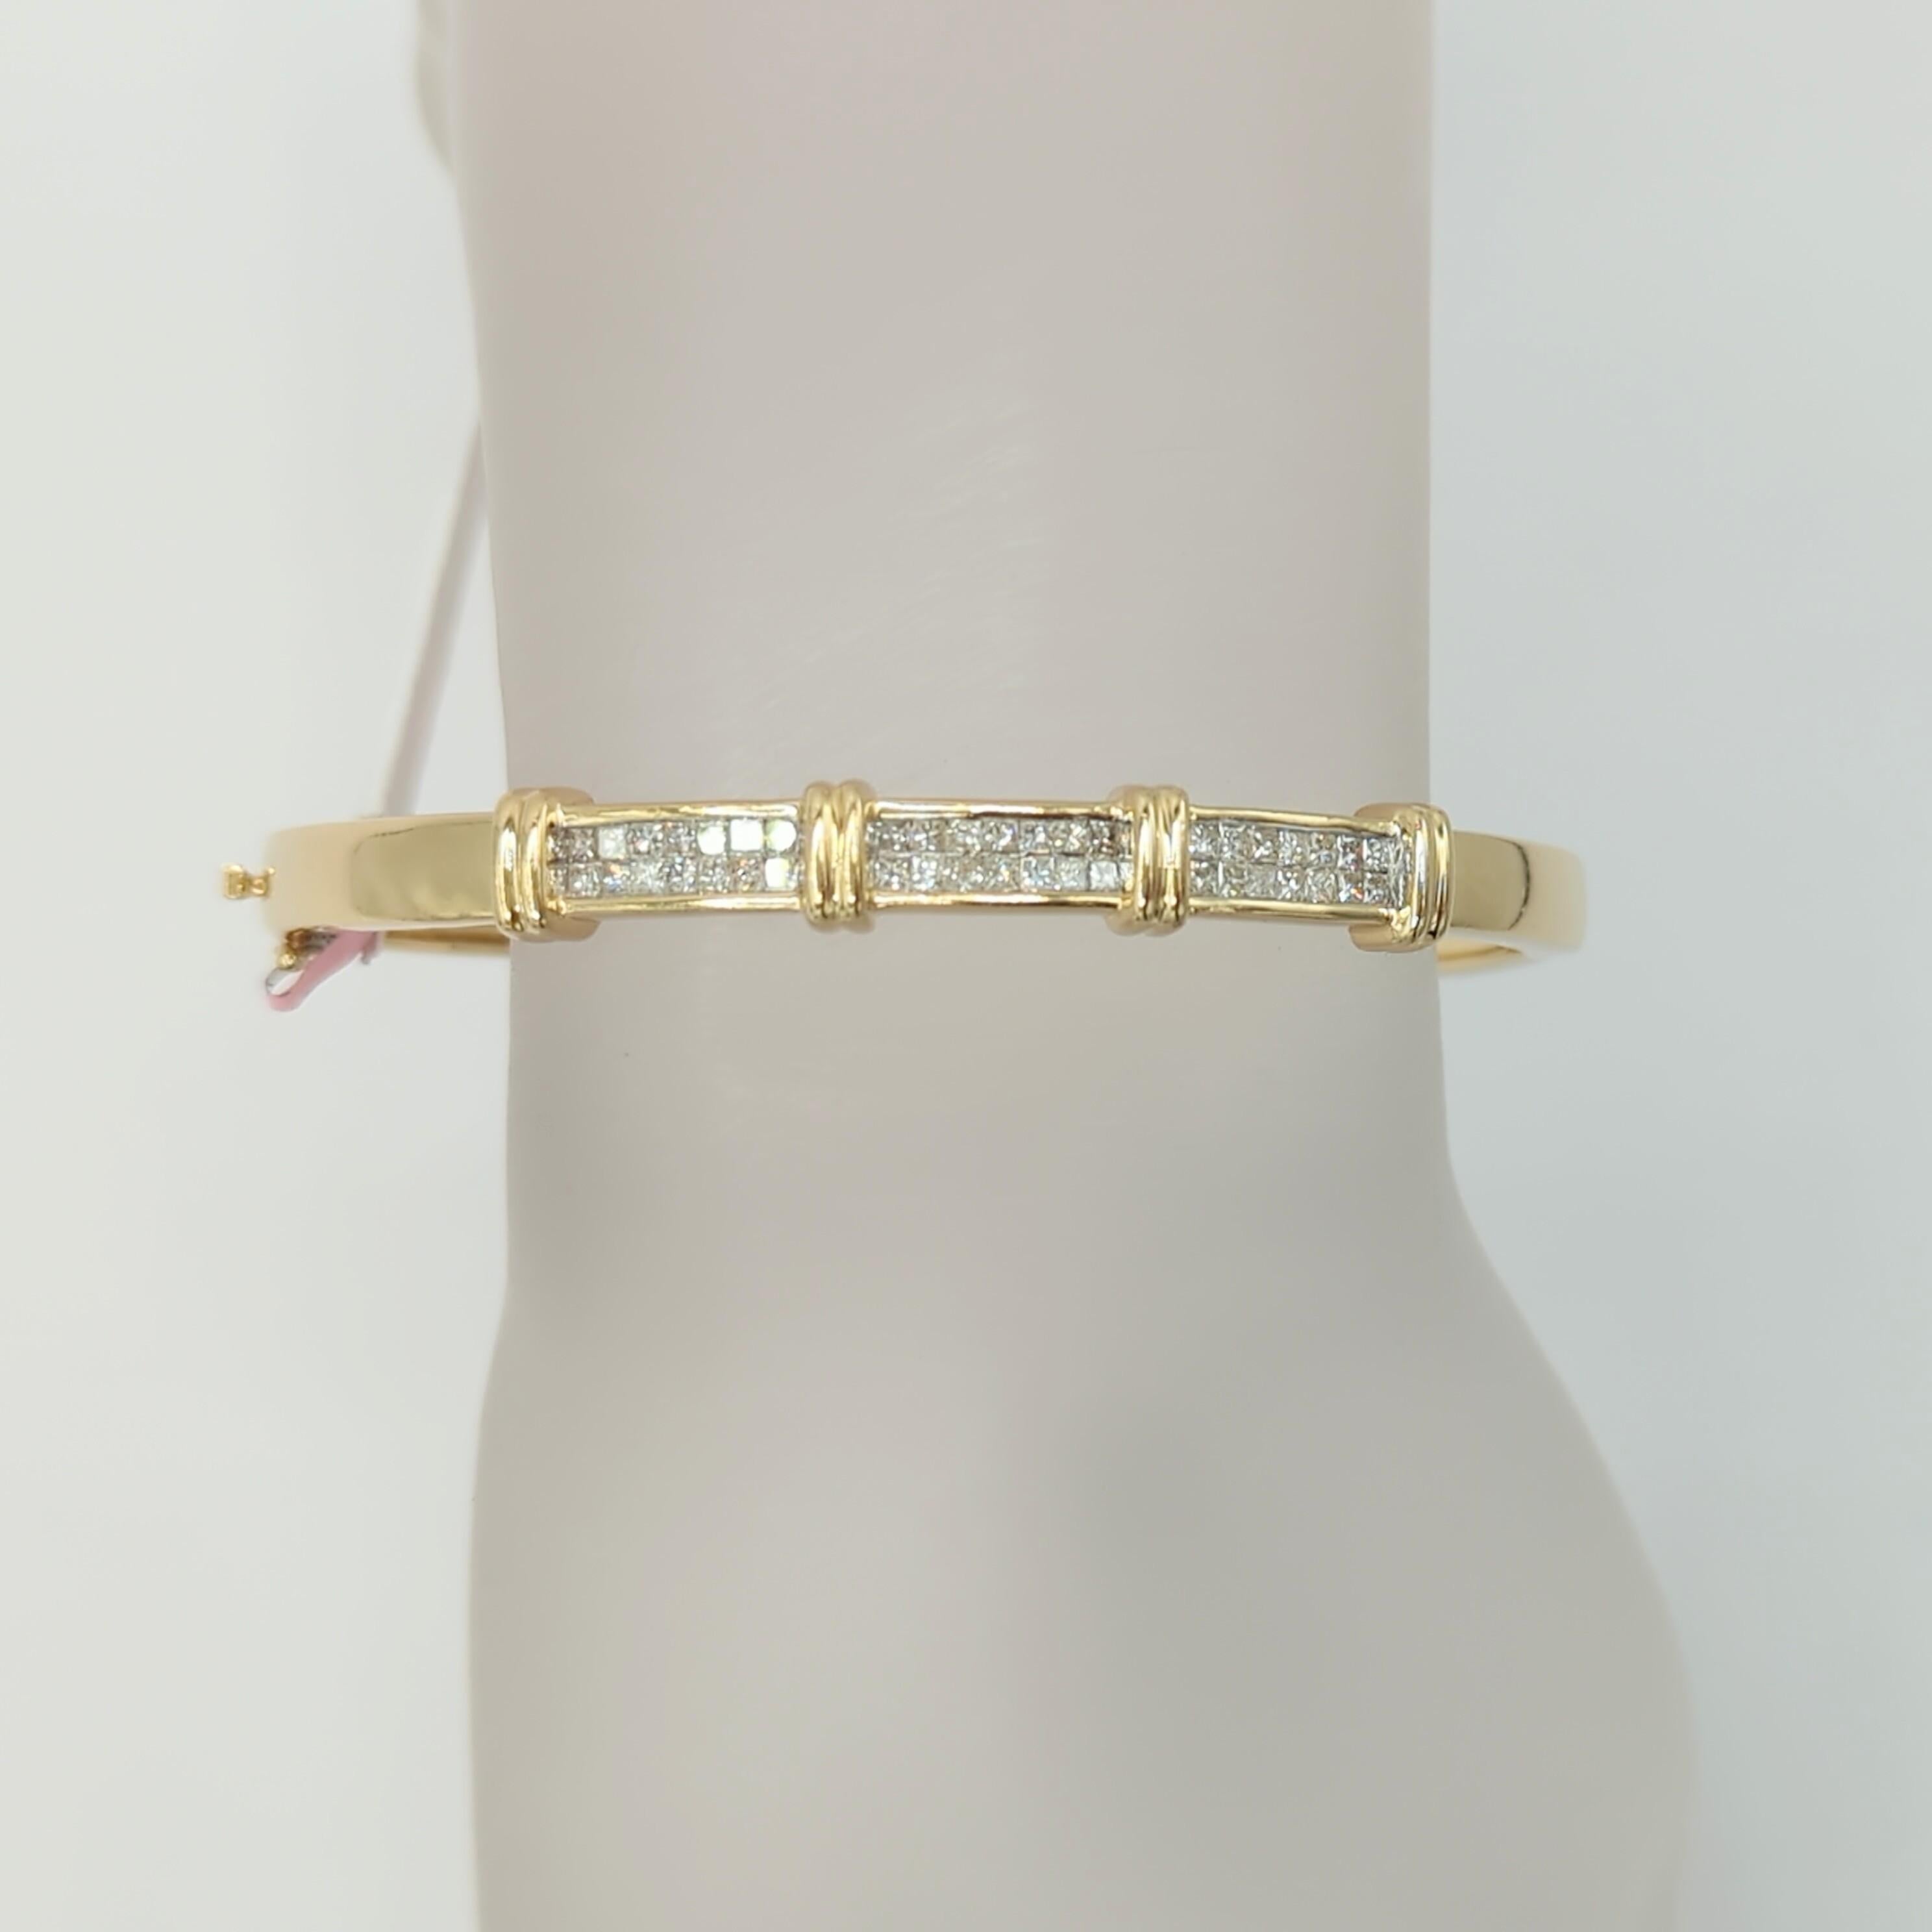 Magnifique diamant blanc de 2,50 ct. taille princesse fait à la main en or jaune 14k.  Ce bracelet est idéal pour être associé à une montre, à d'autres bracelets ou pour être porté seul.